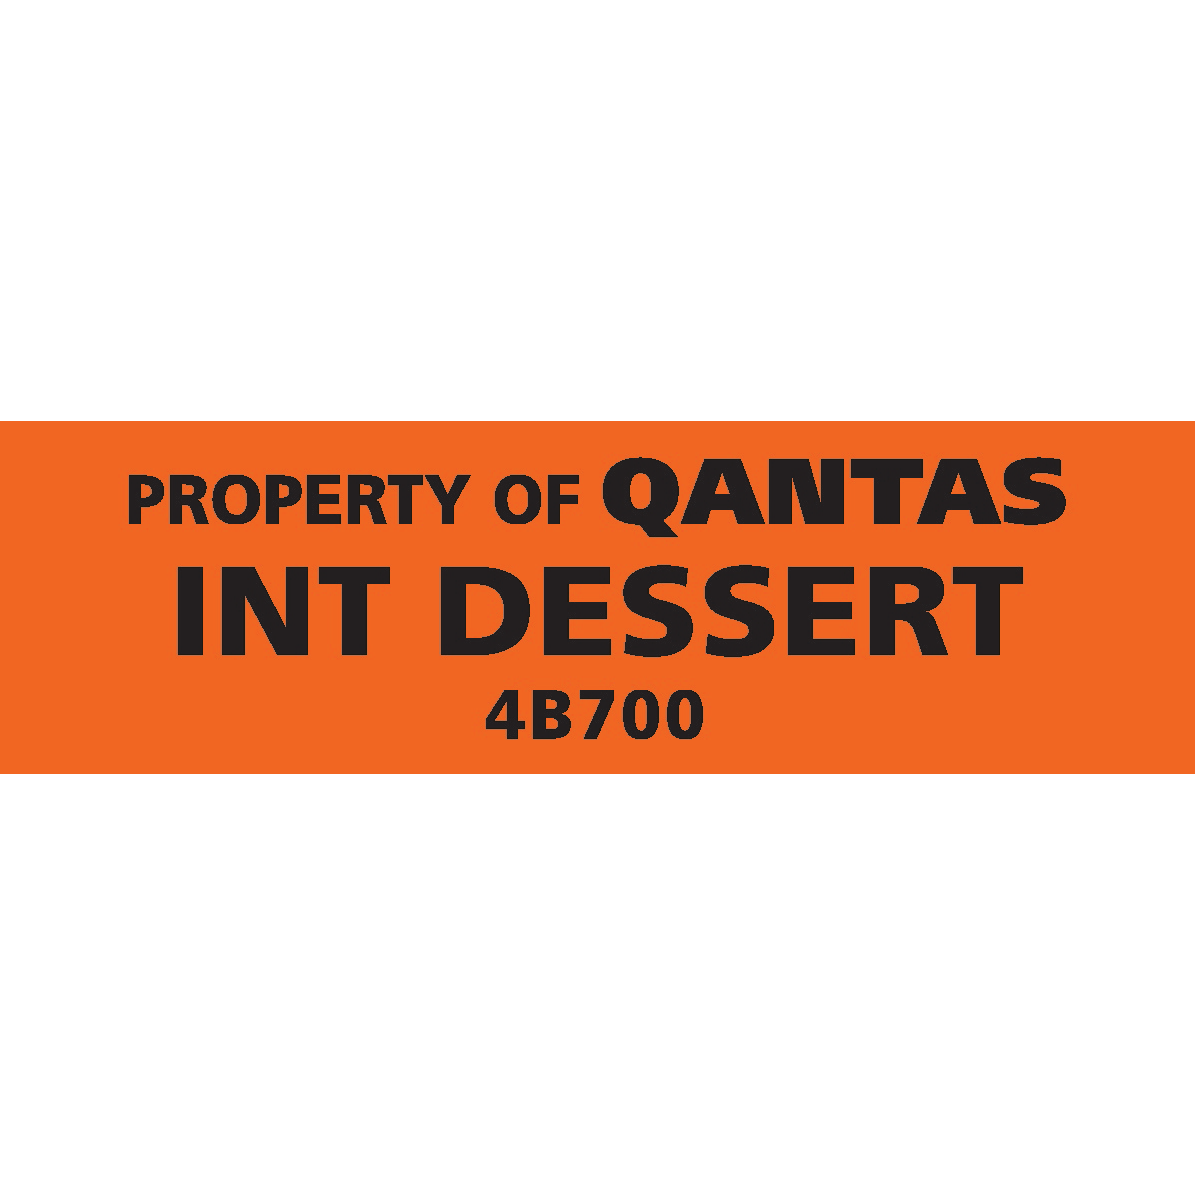 Qantas 4B700 First Class International Dessert Wine - PC INT DESSERT